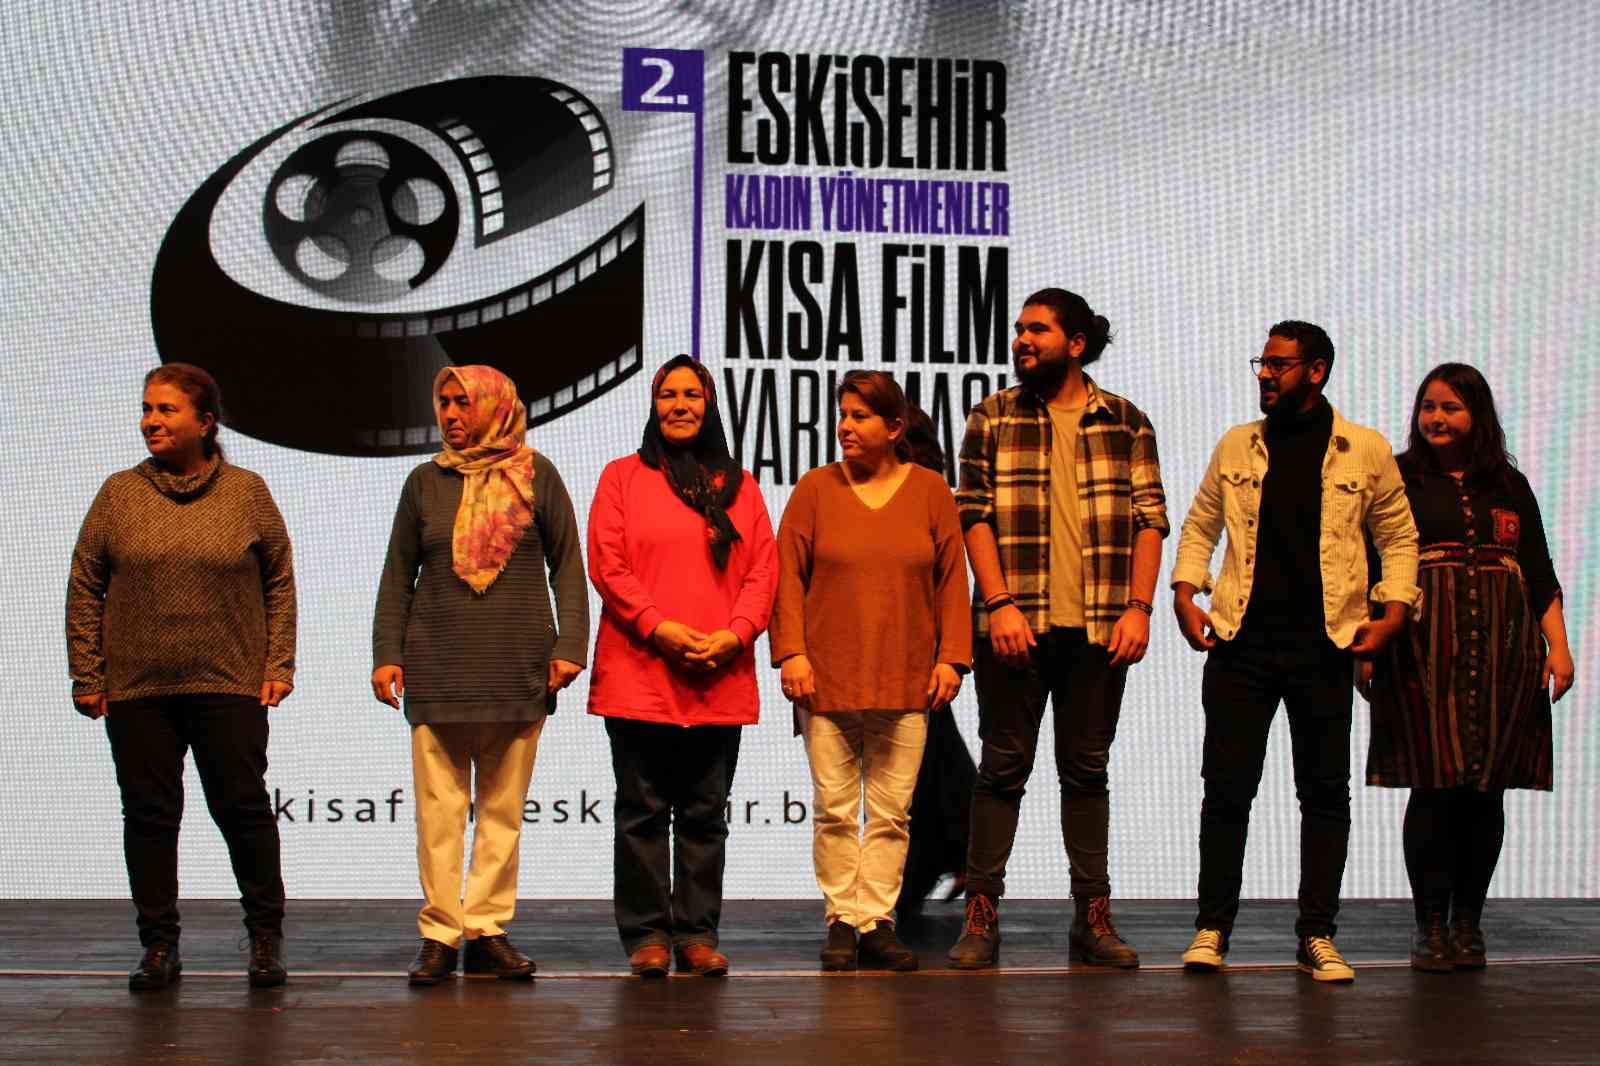 Kadın yönetmenlerin sinematografik çekimleri ödülleri de beraberinde getirdi